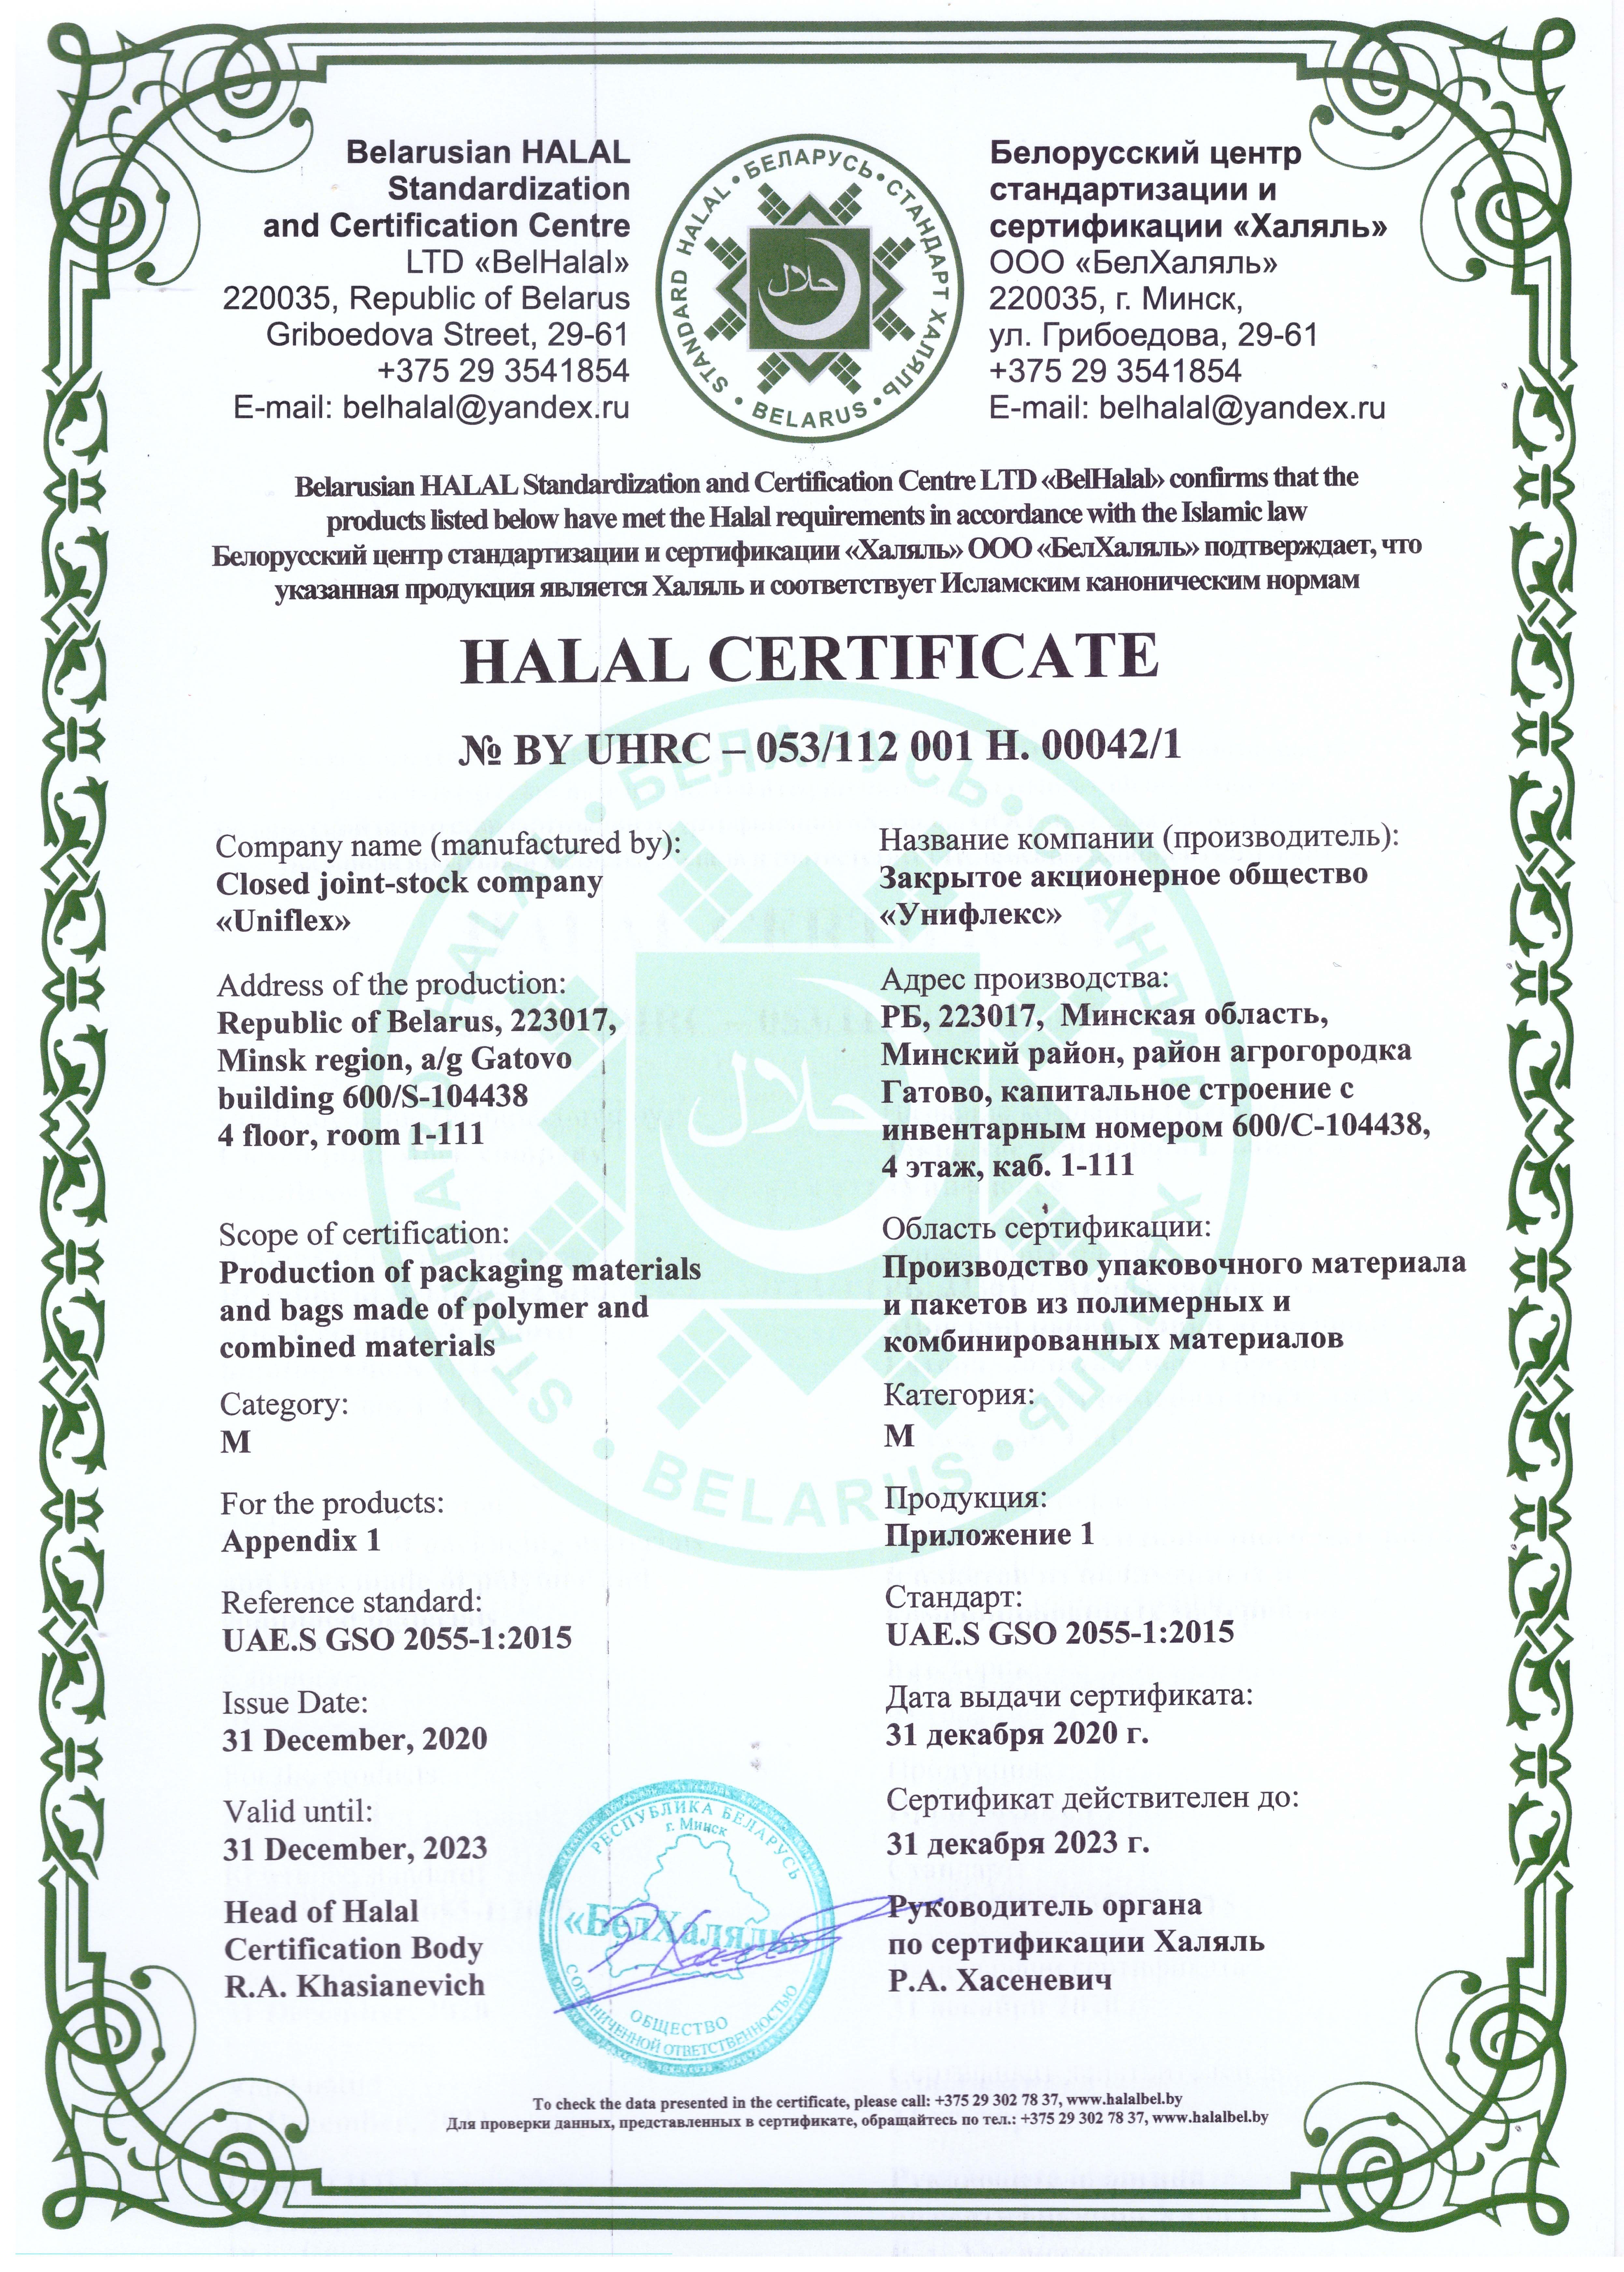 Ламинирование халяль. Сертификат Халяль. Свидетельство подтверждающее Халяль. Сертификат соответствия Халяль. Продукция сертифицирована Халяль.